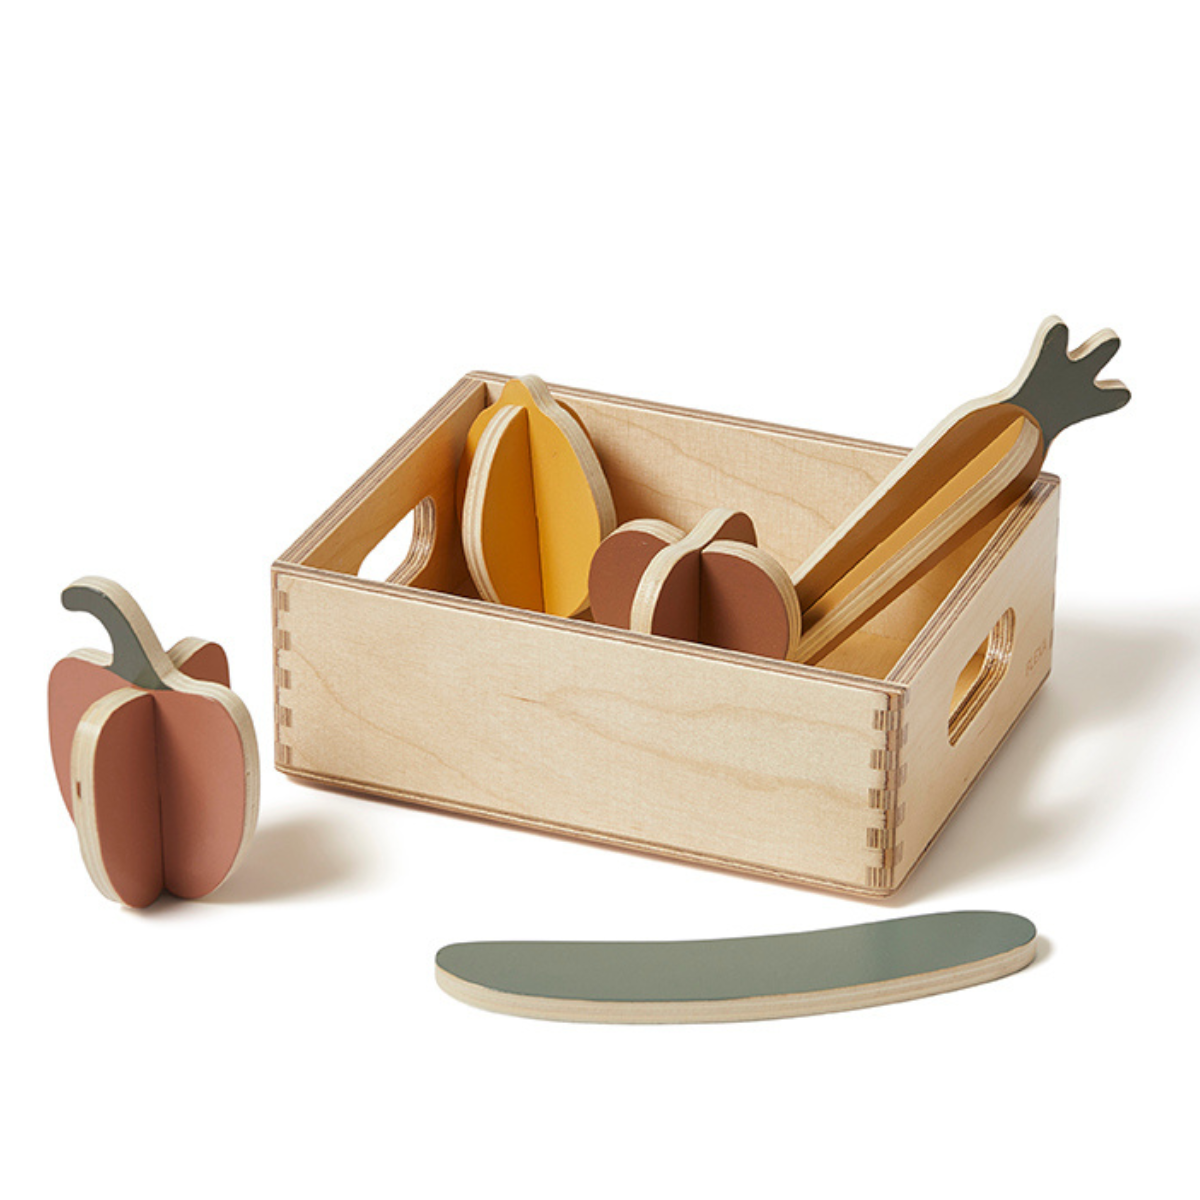 Flexa - Wooden Toy Vegetables Set